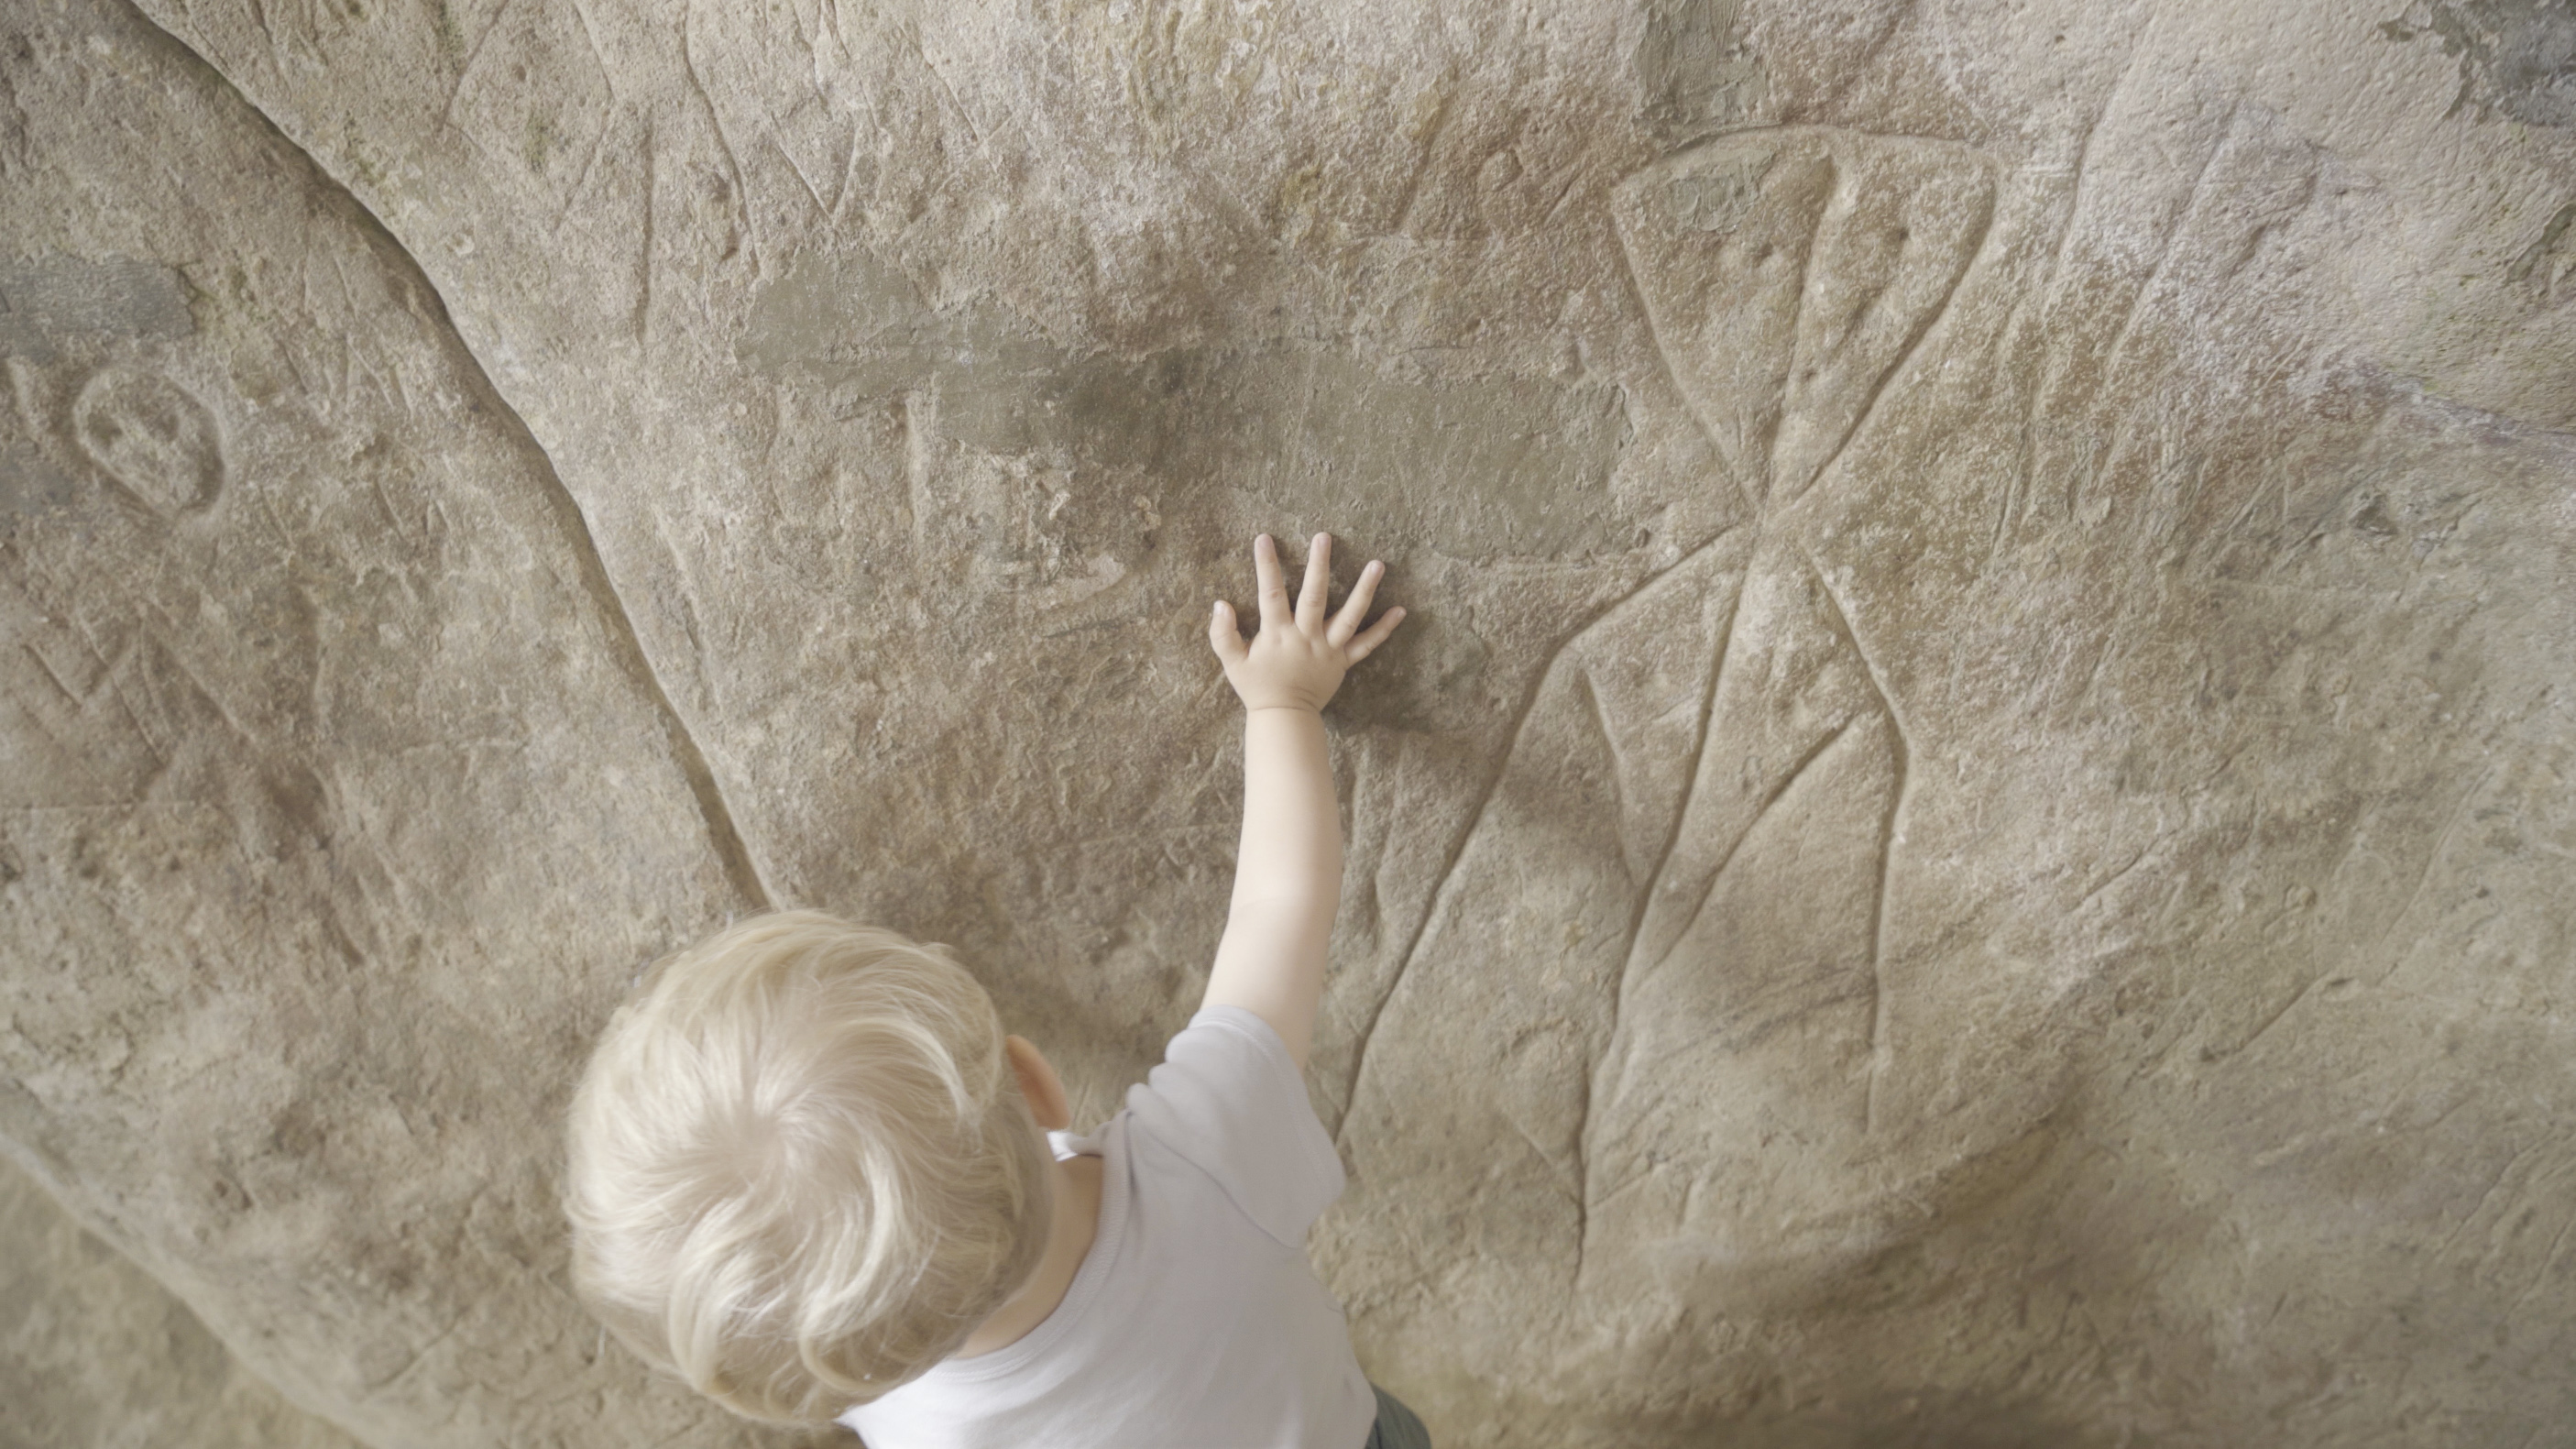 zicht op het blonde hoofd van een jonge kind dat de hand legt op een grote steen met daarin prehistorische tekens gegraveerd